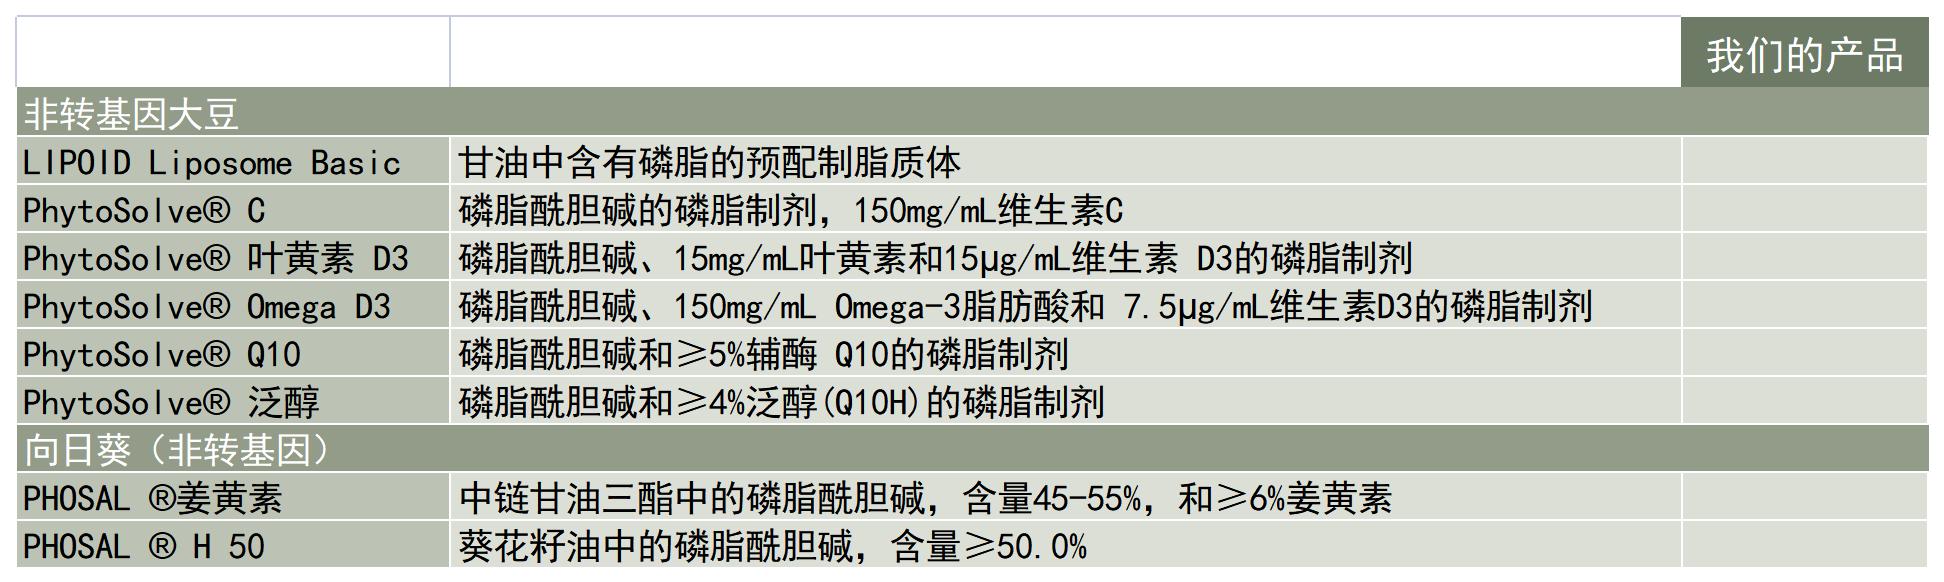 Lipoid-应用-营养健康应用-磷脂制剂-产品列表_A1C11.jpg